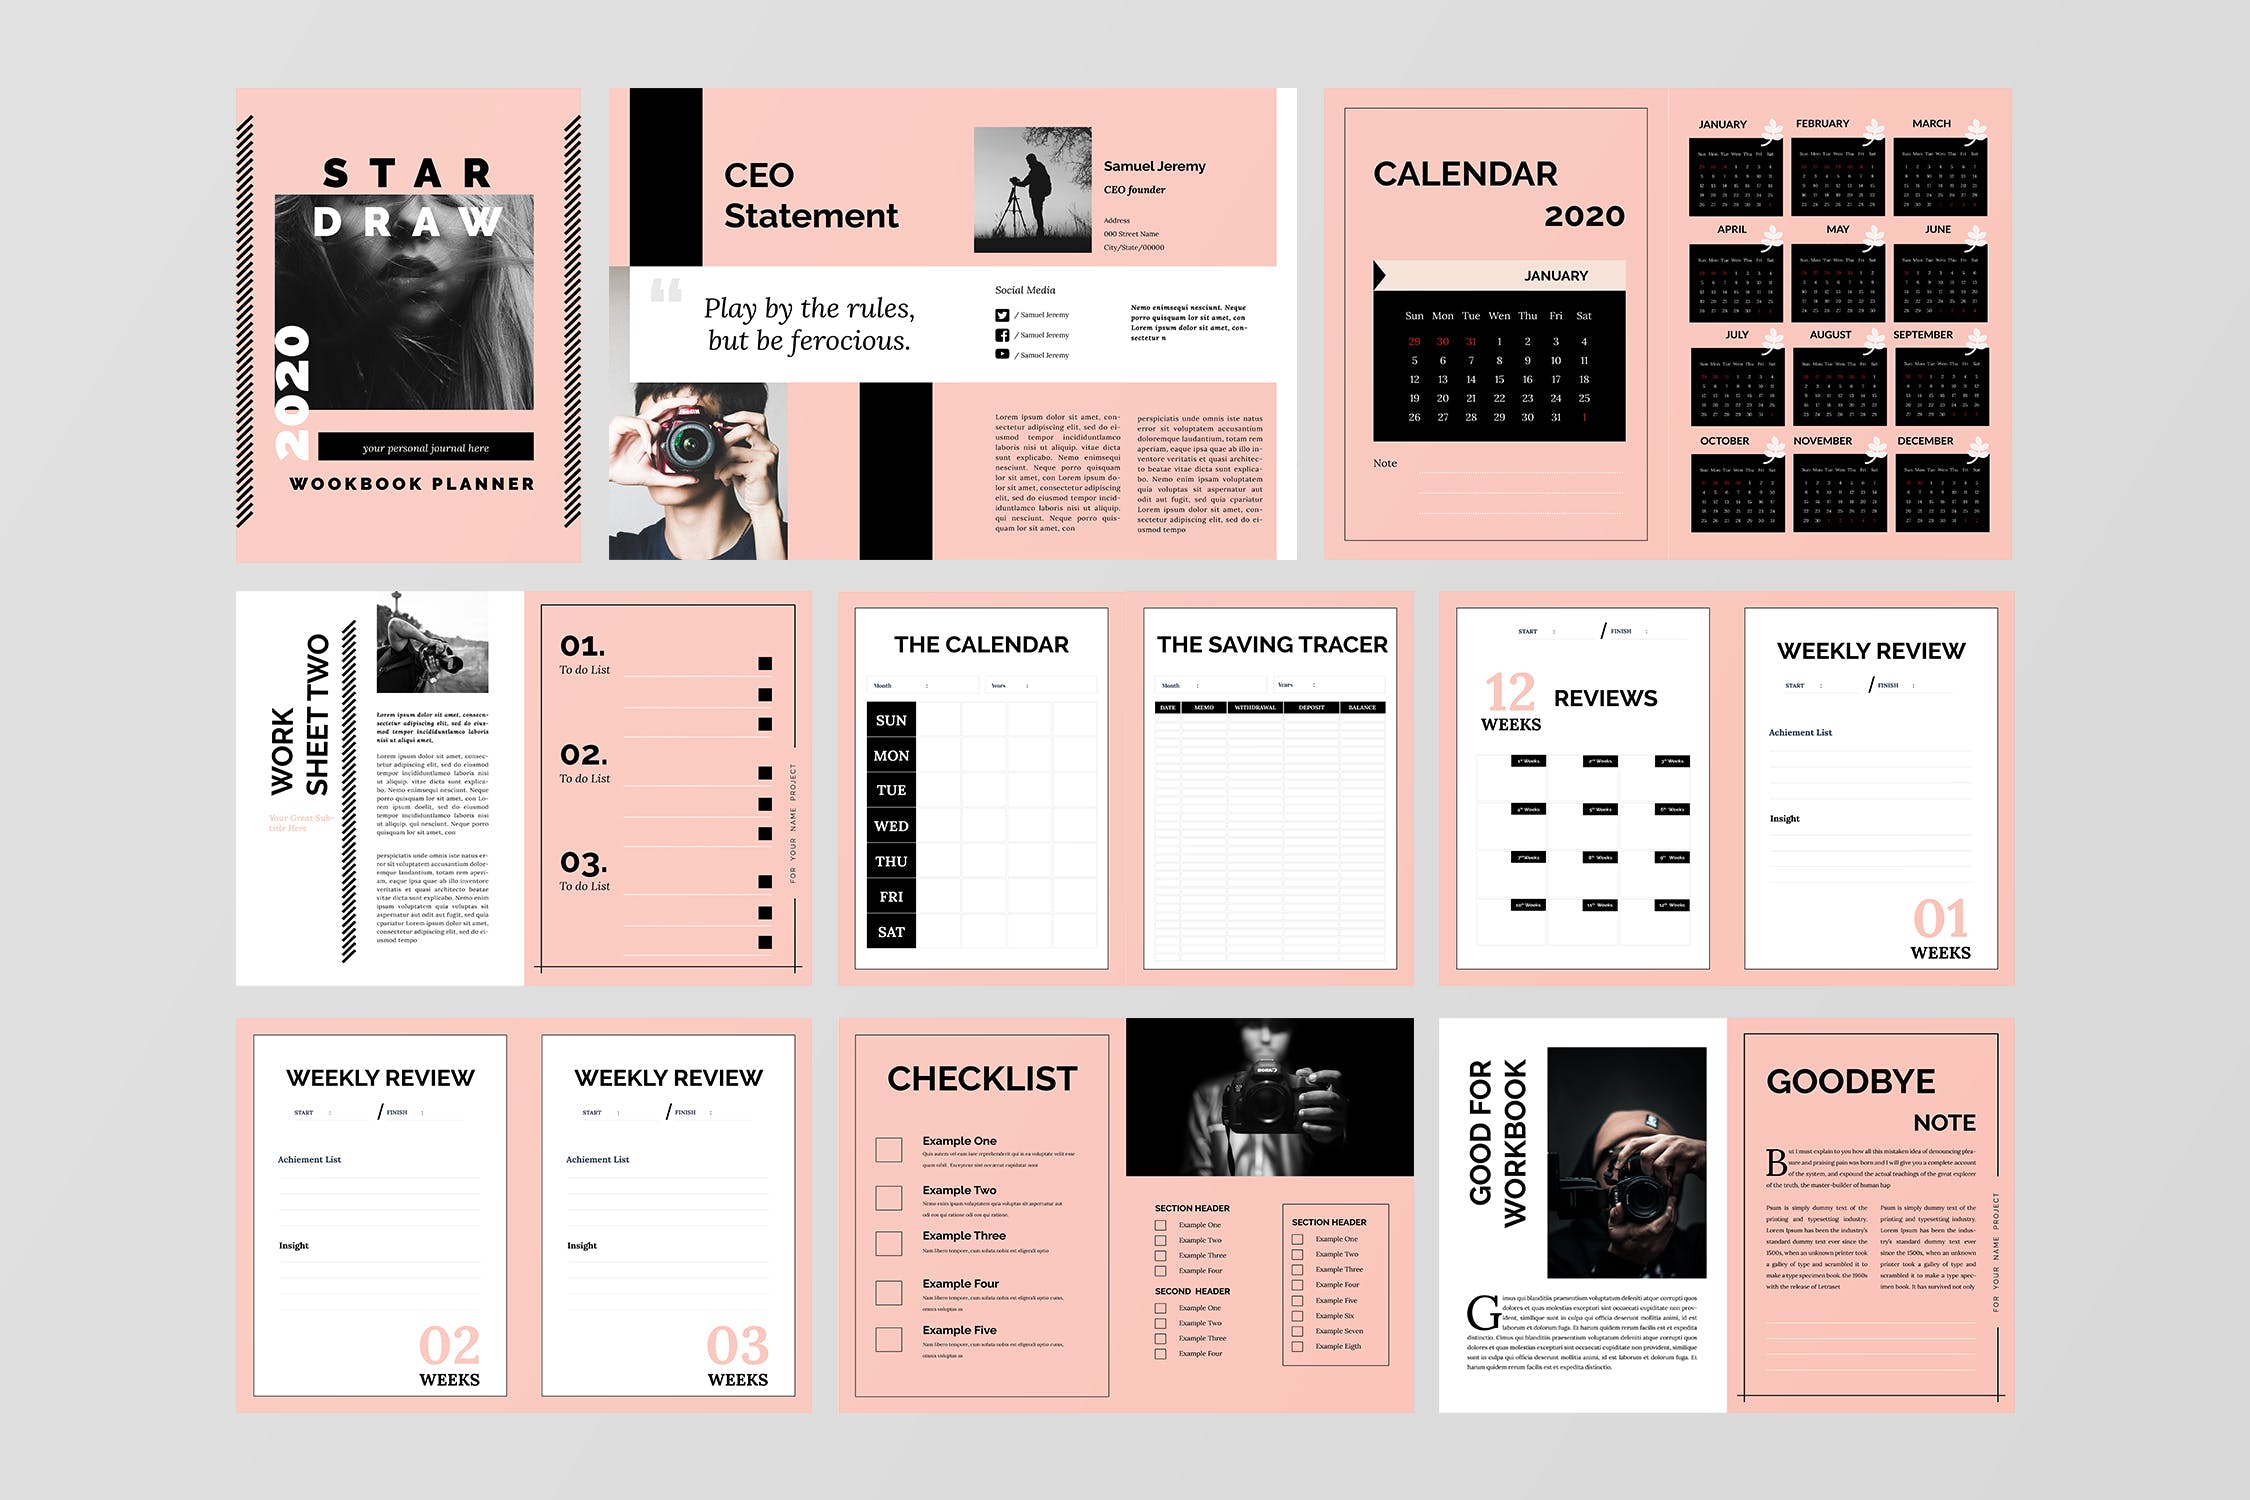 极简主义Workbook创意设计模板v2 Stardraw – Minimalist Workbook Template插图4